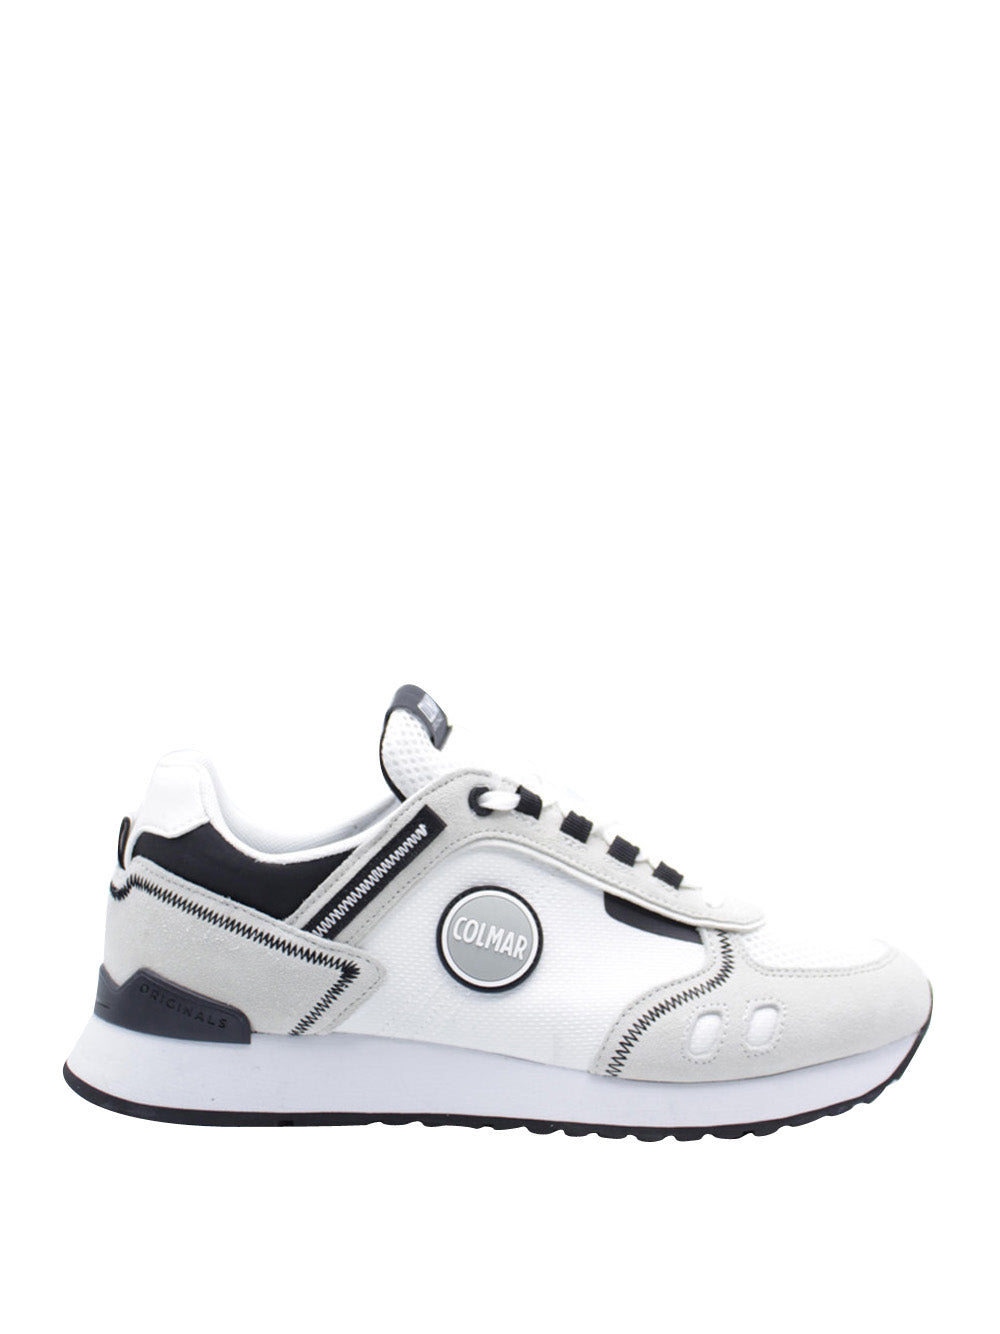 COLMAR Sneakers Uomo - Bianco modello TRAVISSPORT